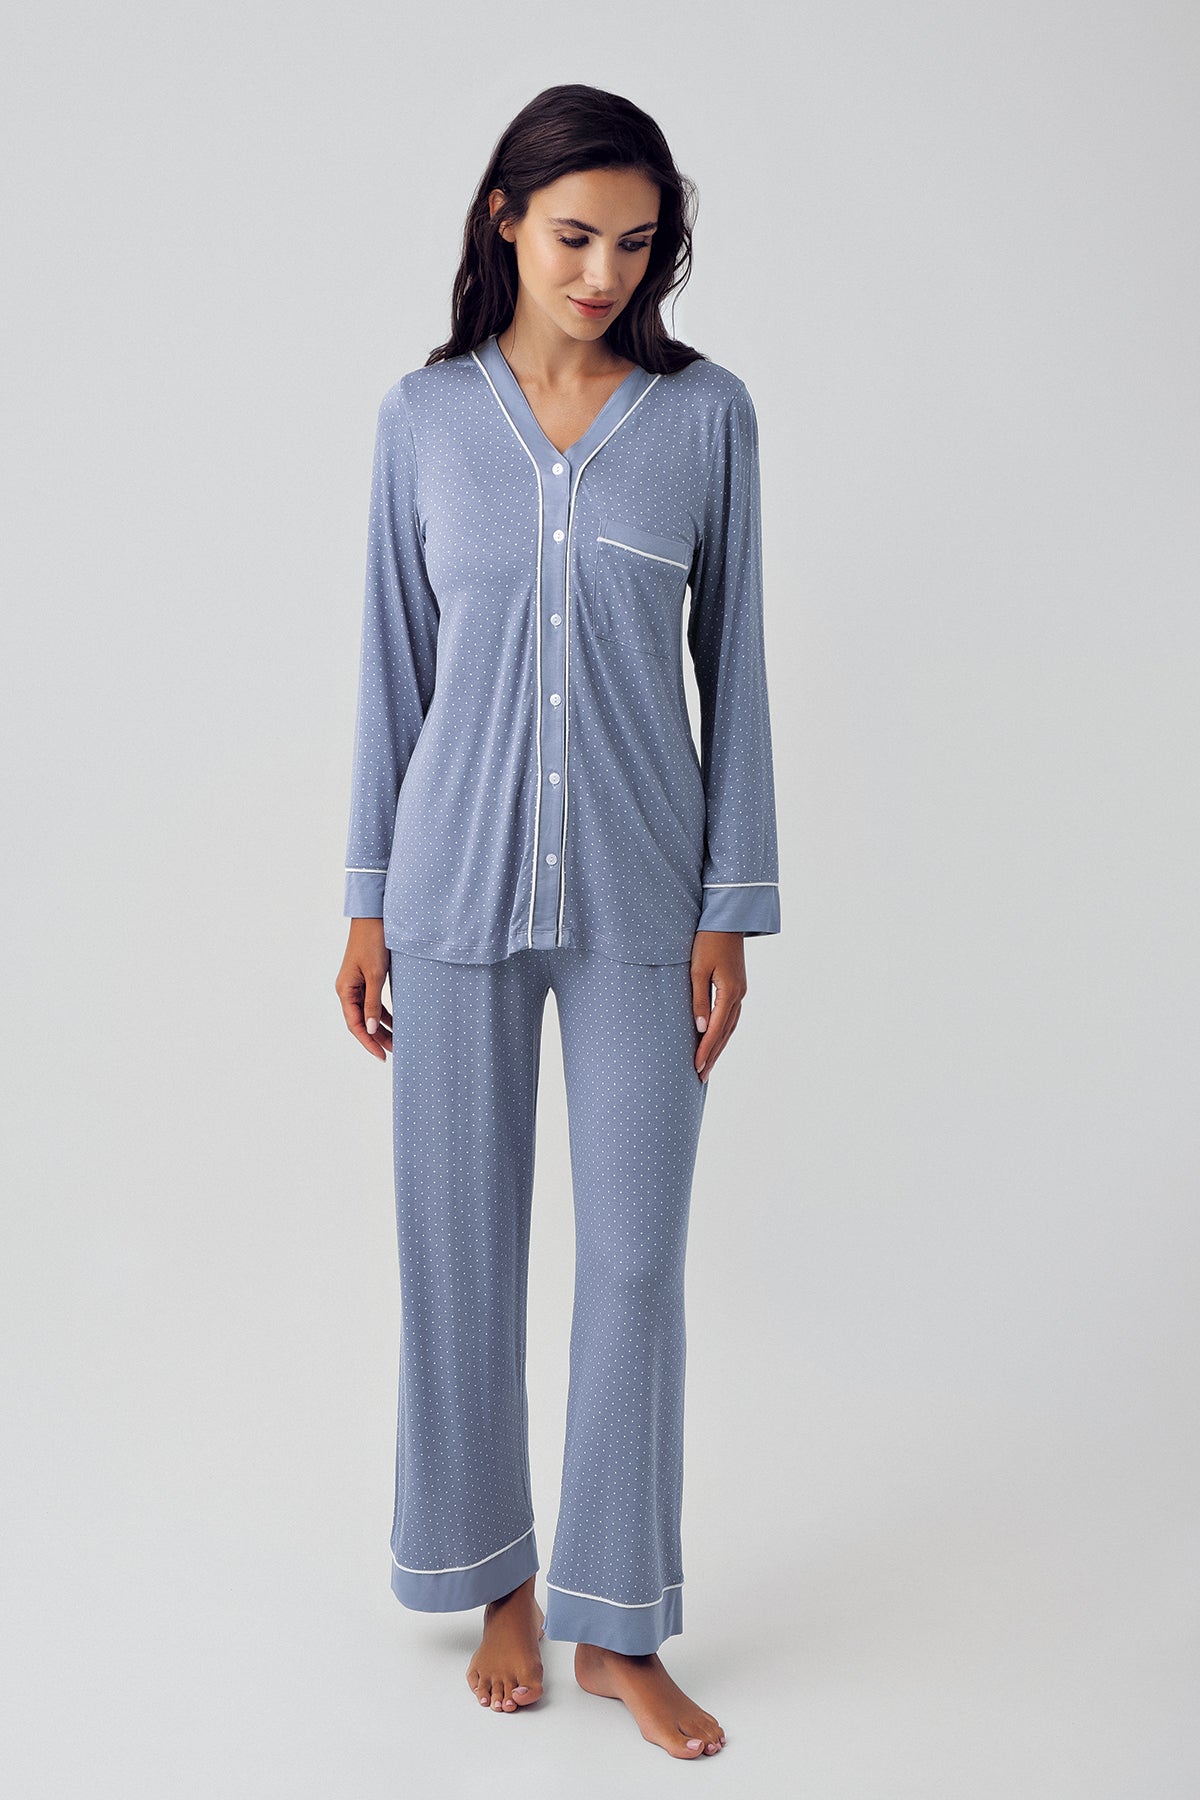 Shopymommy 15201 Polka Dot Maternity & Nursing Pajamas Indigo